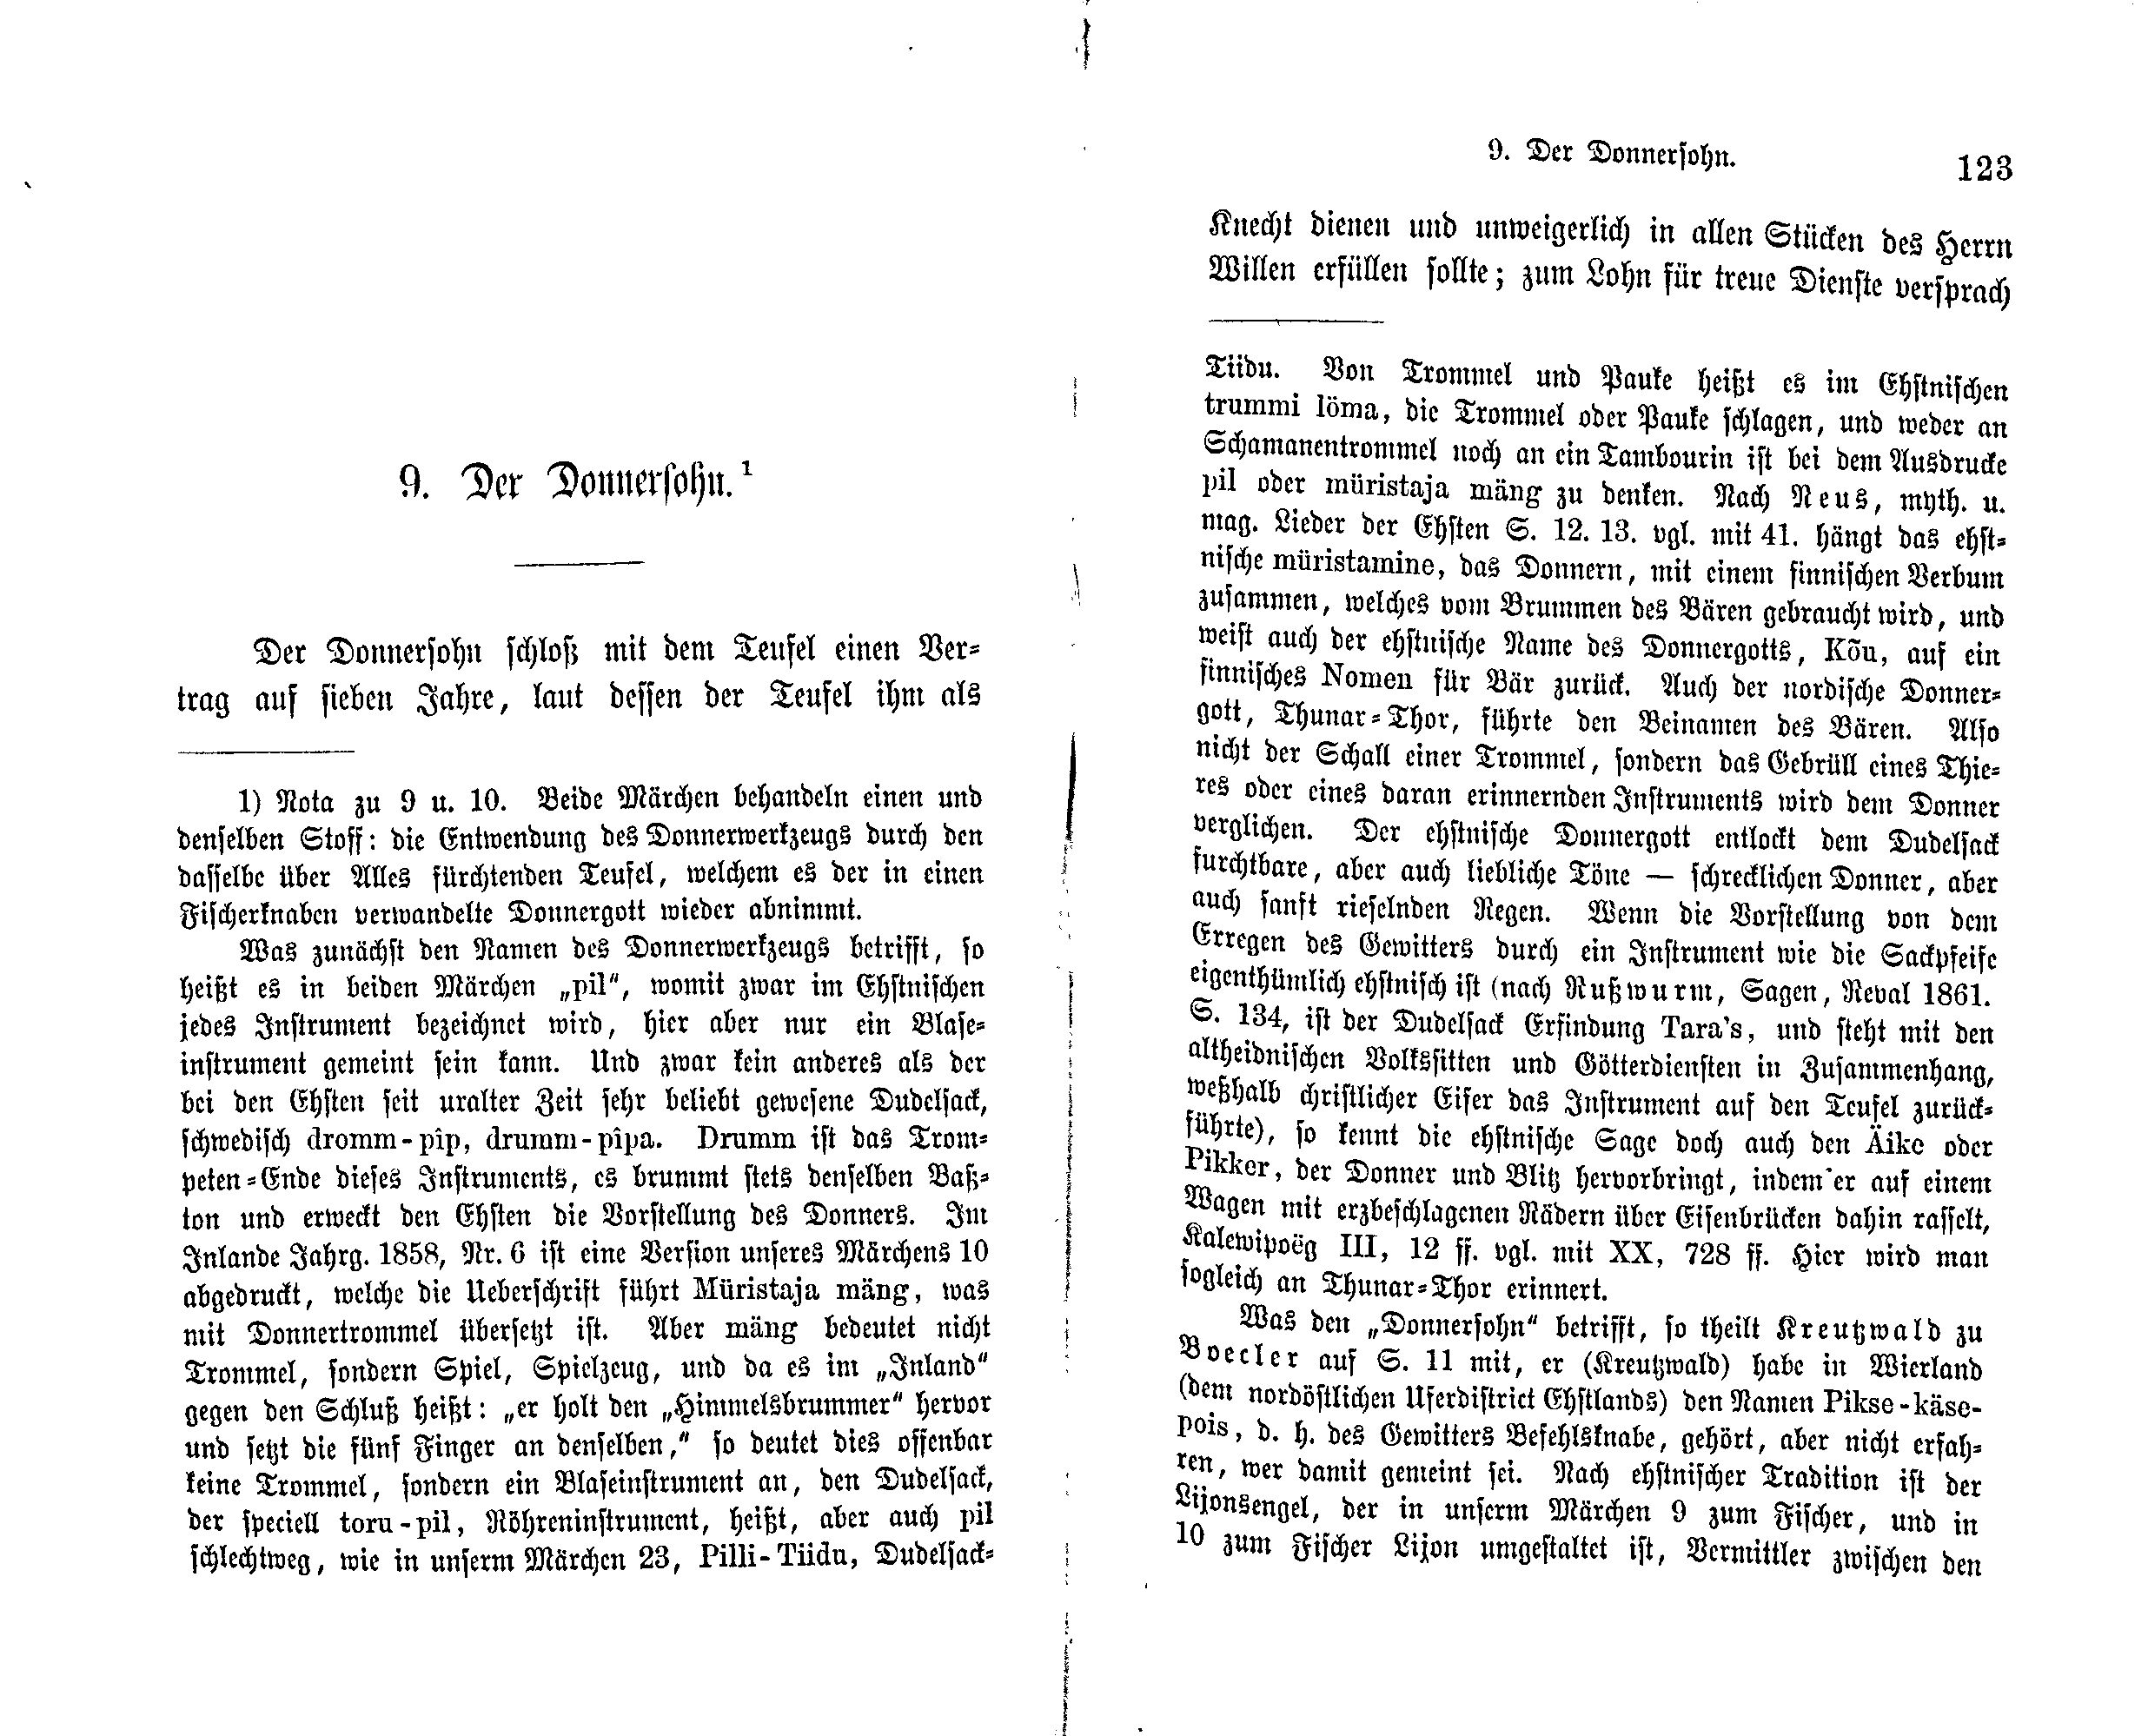 Der Donnersohn (1869) | 1. (122-123) Main body of text